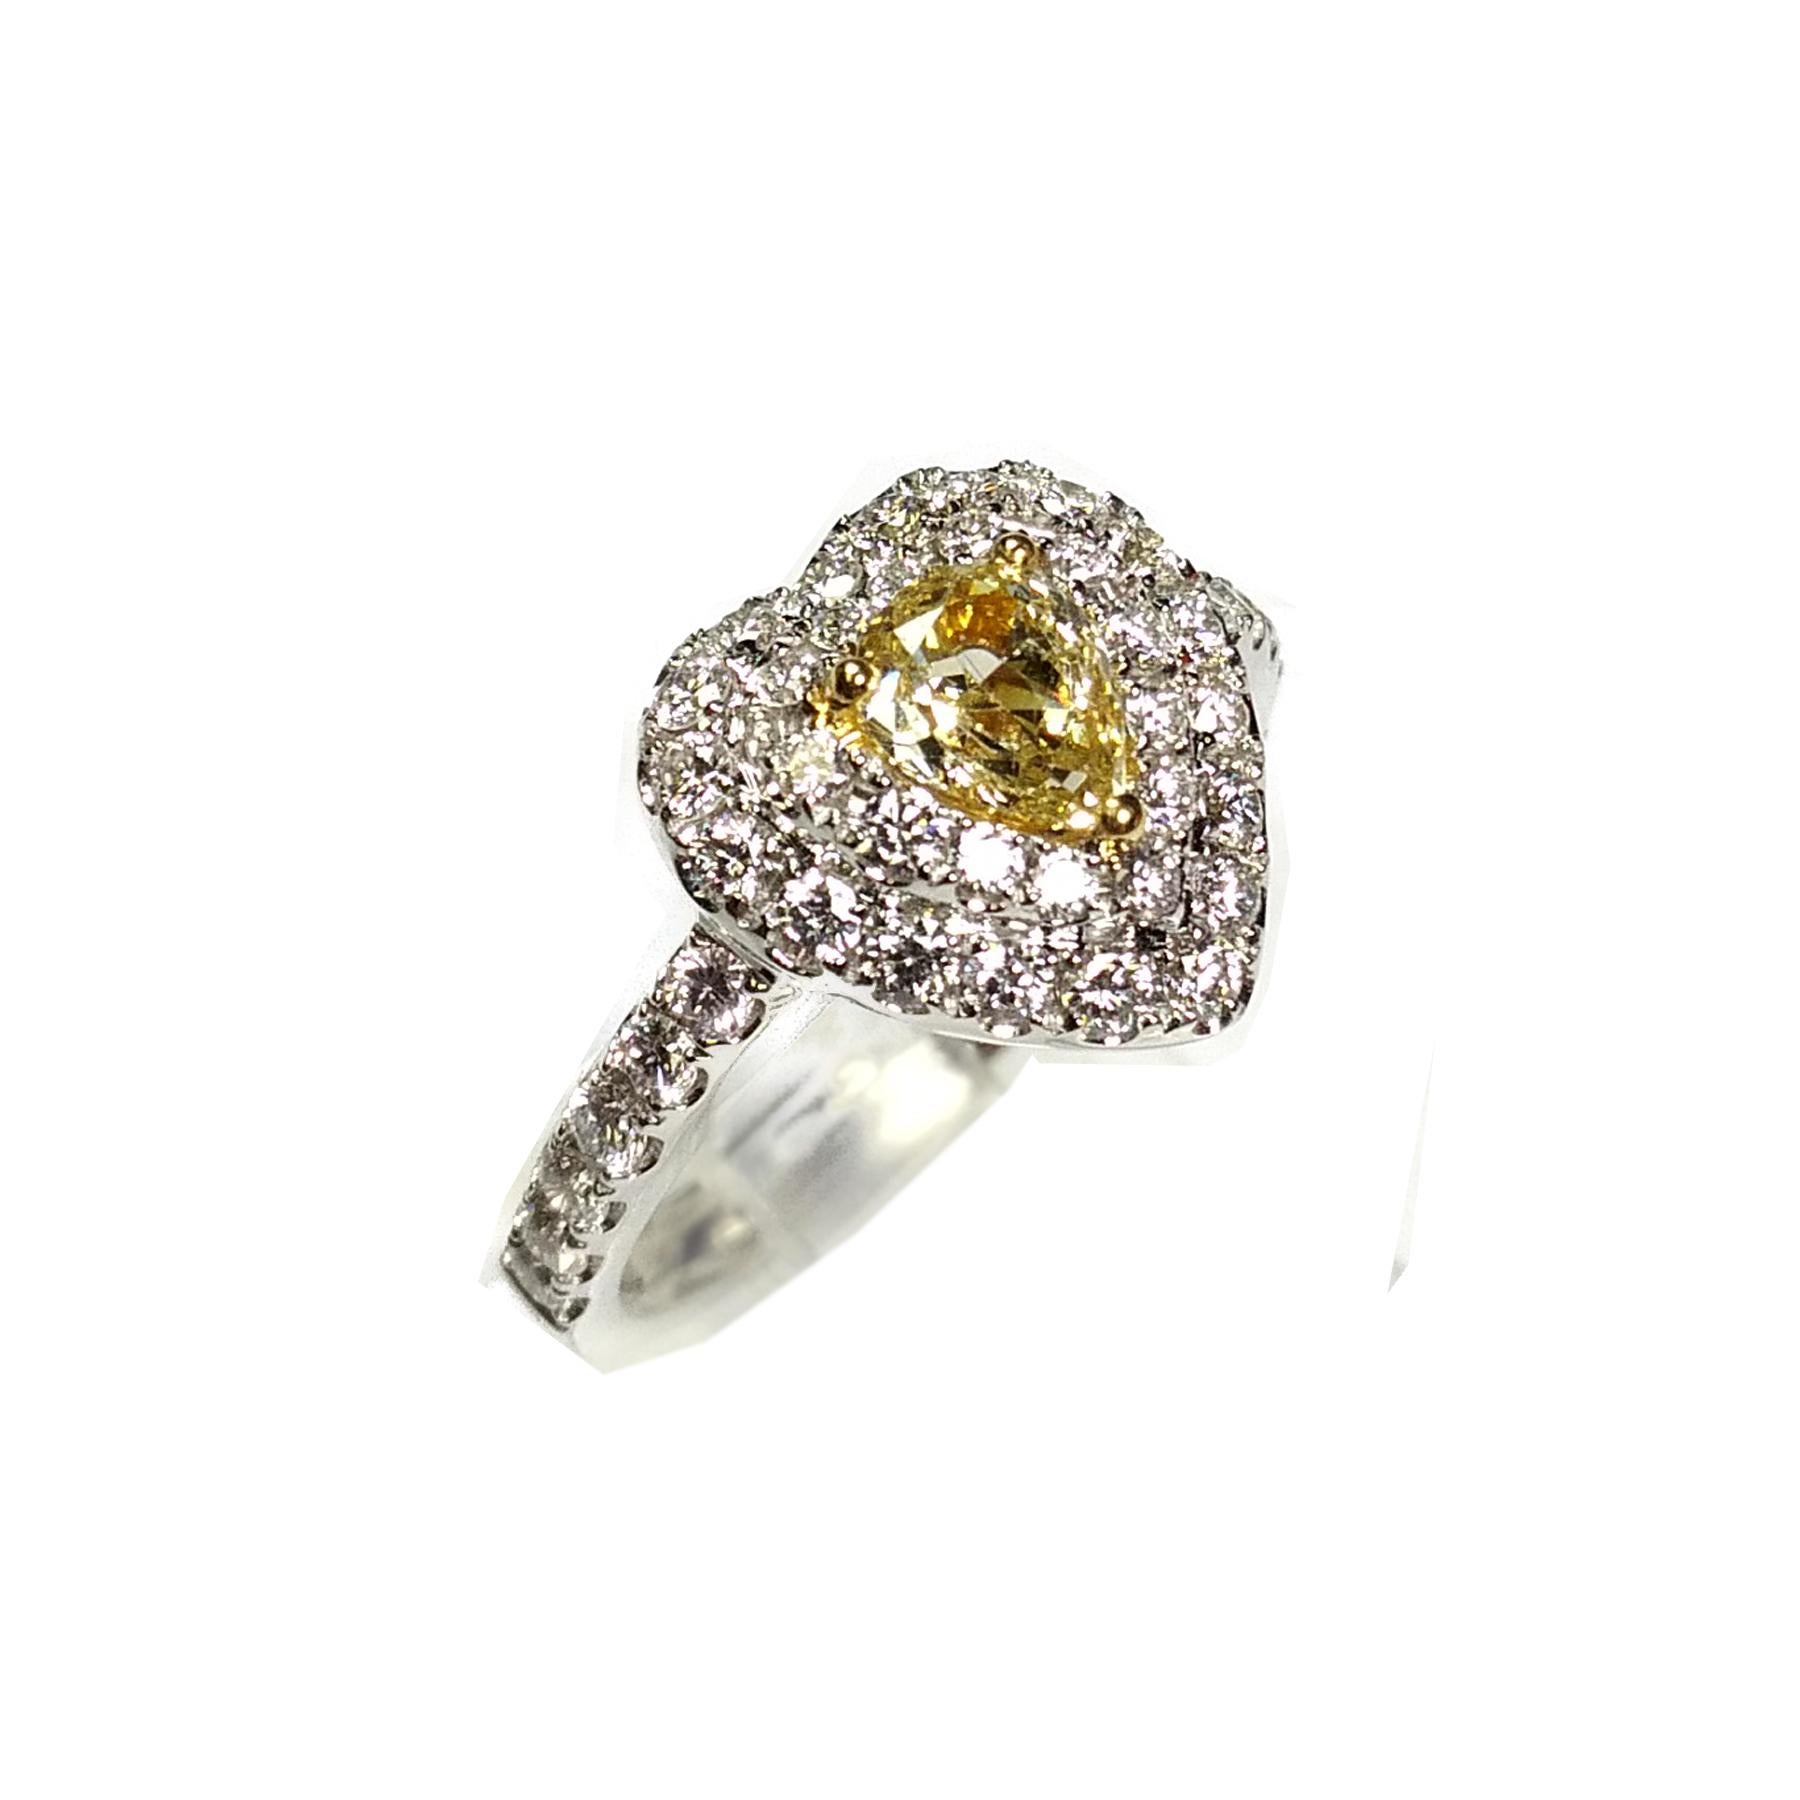 Ausgefallener gelber Diamantring mit 0,57 Karat. Natürlicher gelber Brillant im Birnenschliff, gefasst in einer hochkarätigen Korbfassung mit 3 Gelbgoldzacken. Handgefertigtes herzförmiges Design mit runden Diamanten im Brillantschliff, akzentuiert